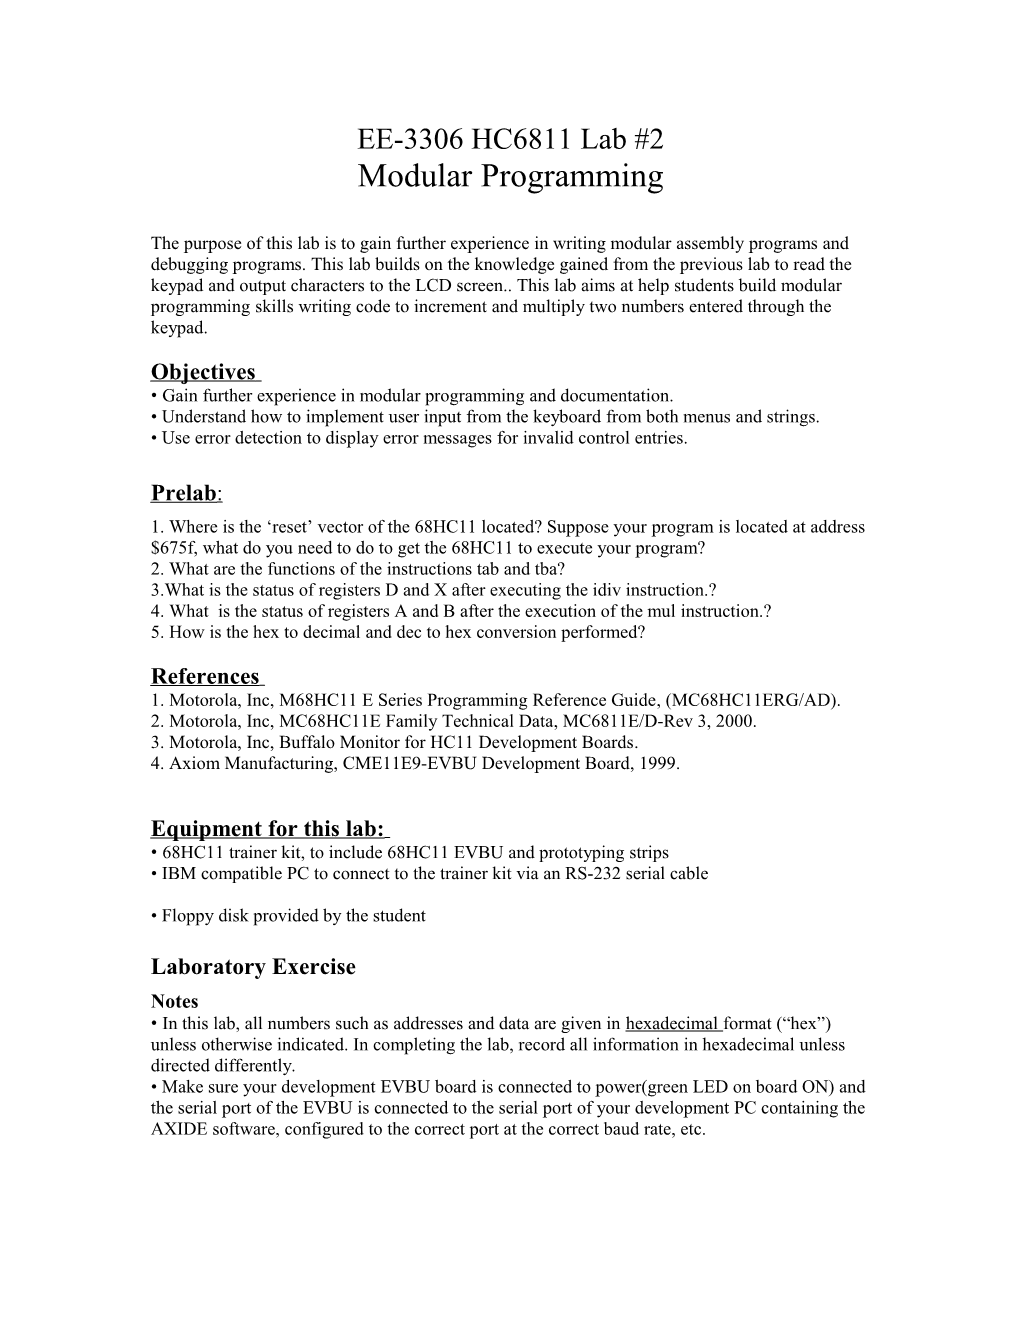 Modular Programming Motor Control Interface